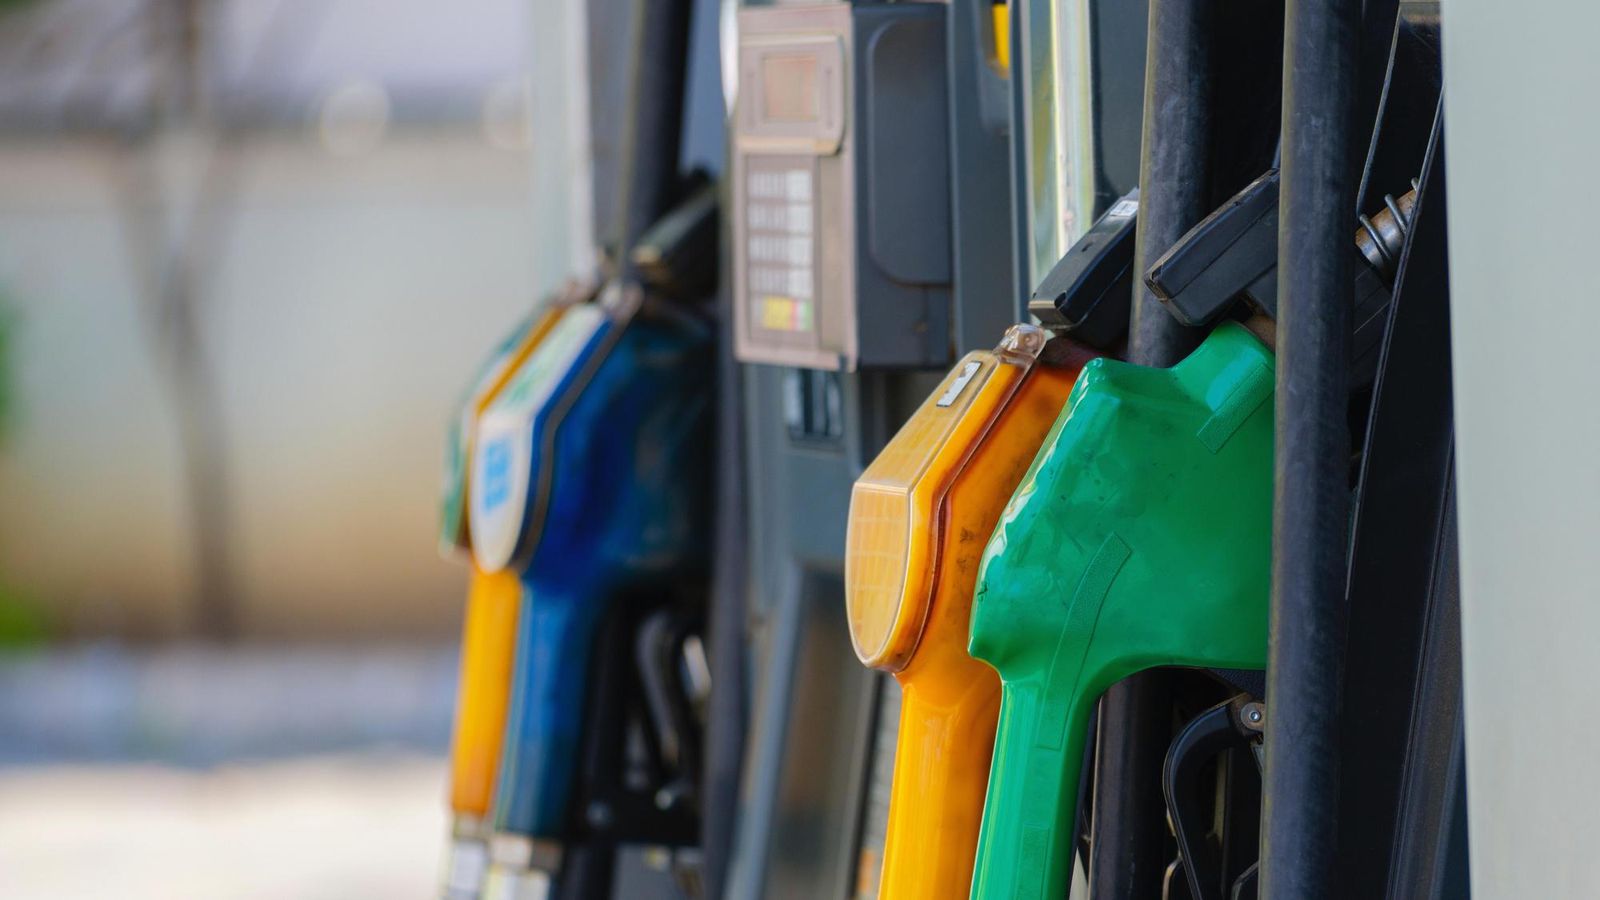 Ceny väčšiny pohonných látok za posledný týždeň klesli